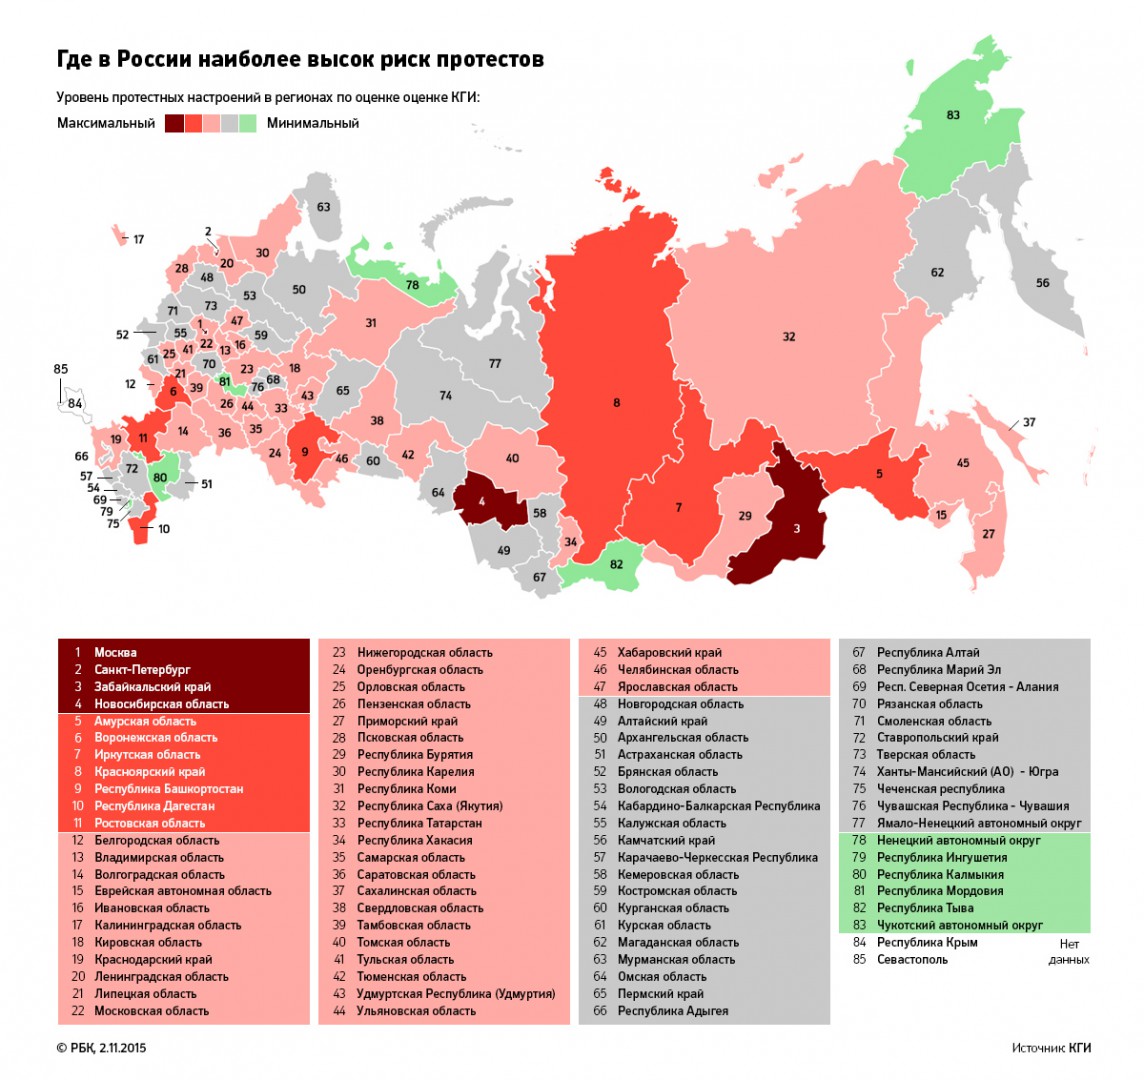 Алтайский край отмечен как регион с минимальной протестной активностью